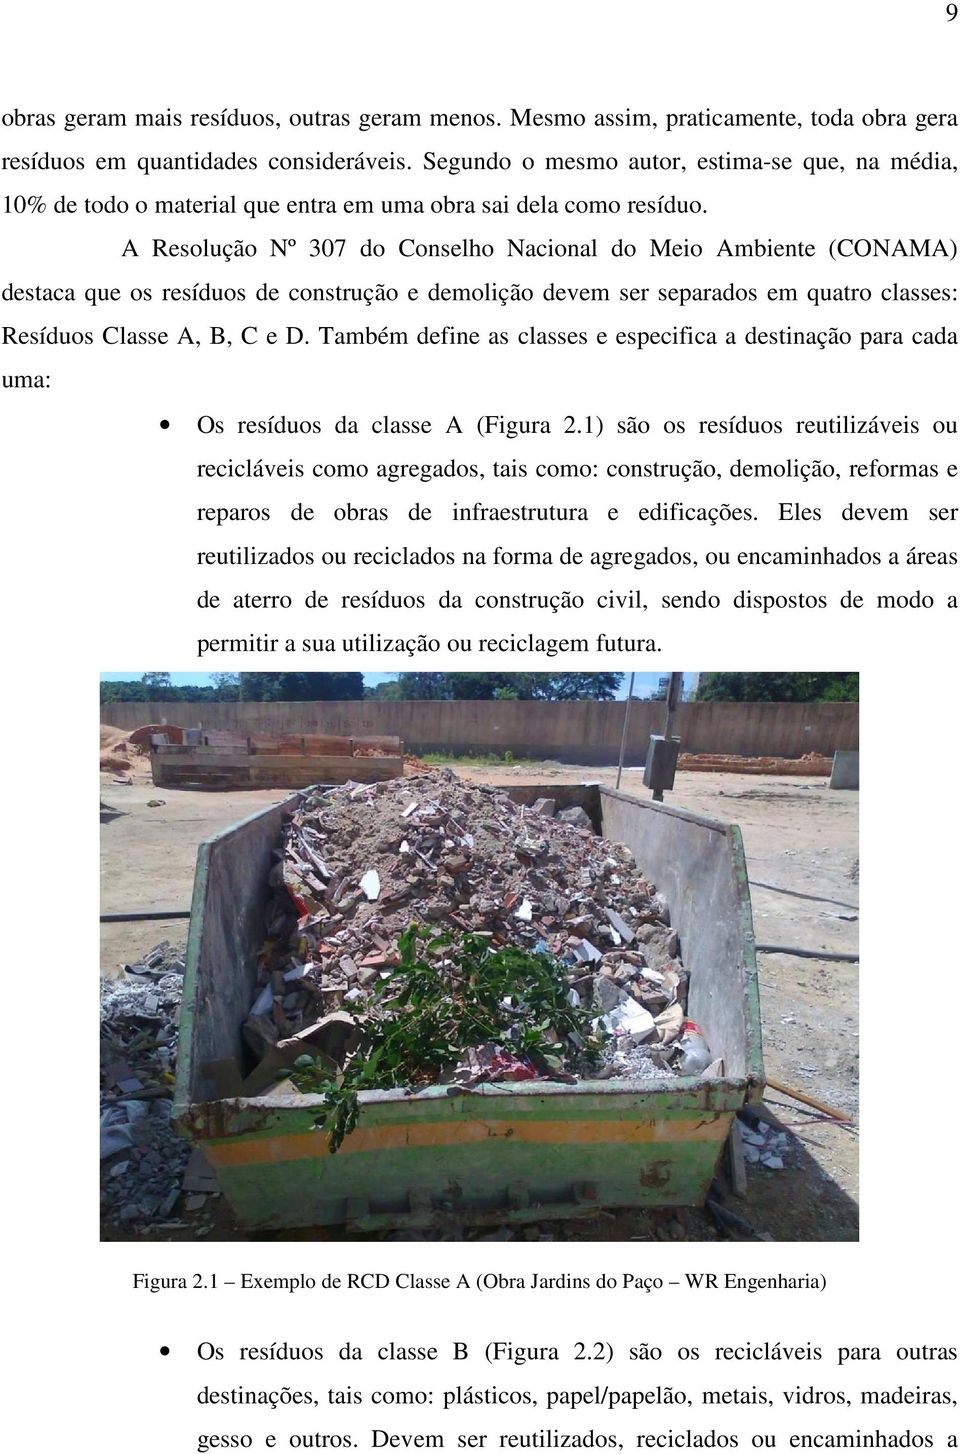 A Resolução Nº 307 do Conselho Nacional do Meio Ambiente (CONAMA) destaca que os resíduos de construção e demolição devem ser separados em quatro classes: Resíduos Classe A, B, C e D.